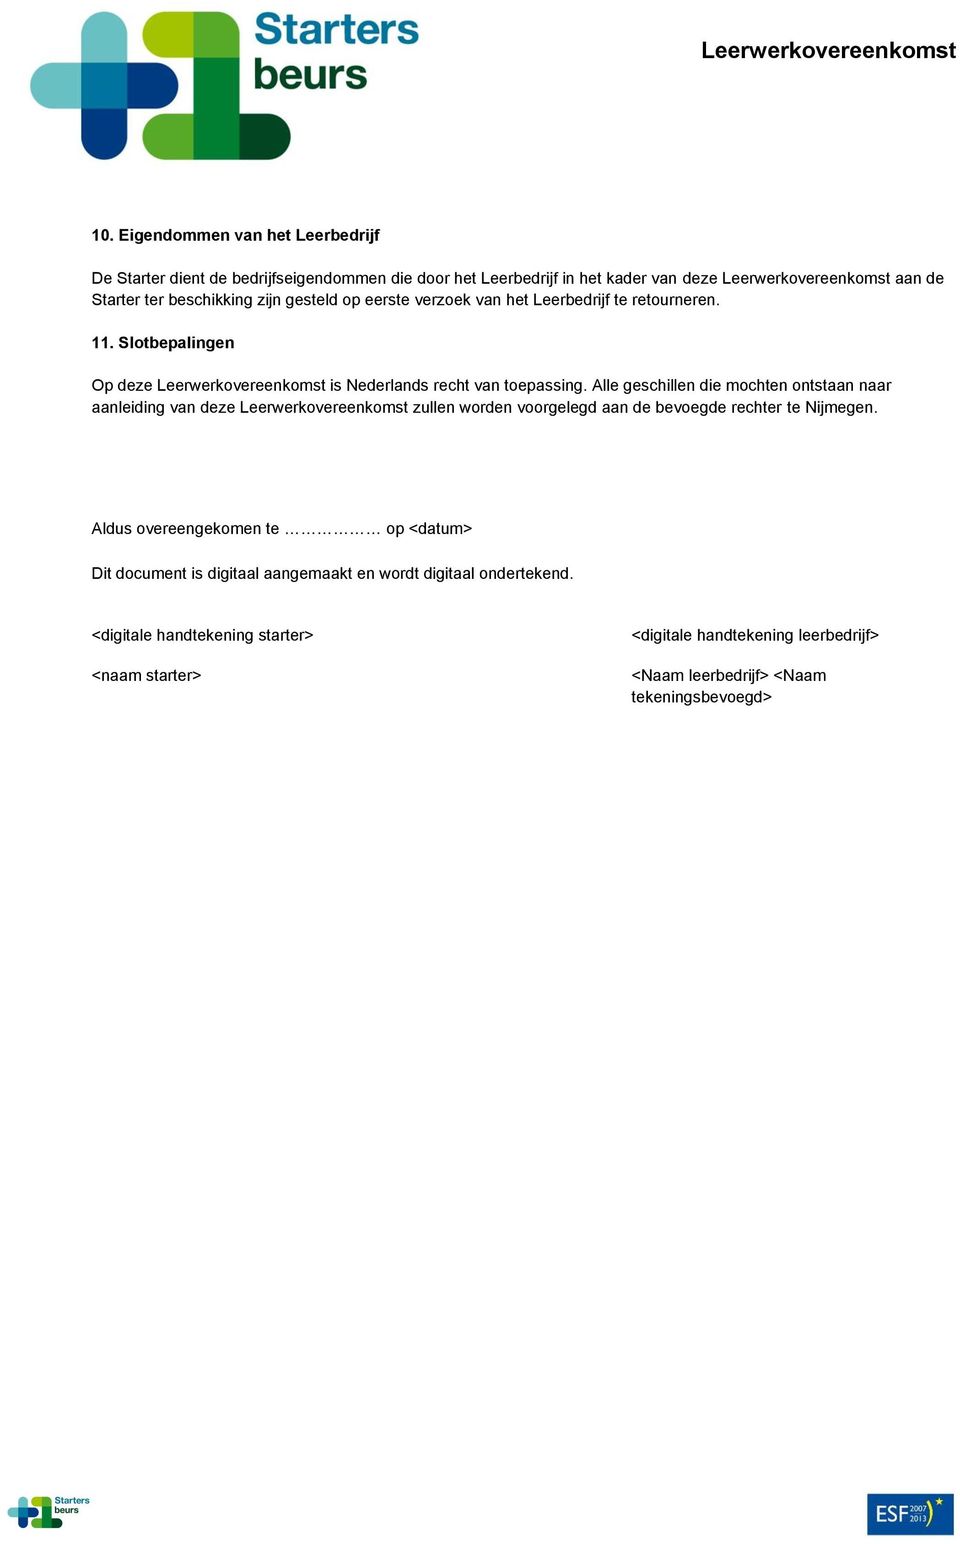 Alle geschillen die mochten ontstaan naar aanleiding van deze Leerwerkovereenkomst zullen worden voorgelegd aan de bevoegde rechter te Nijmegen.